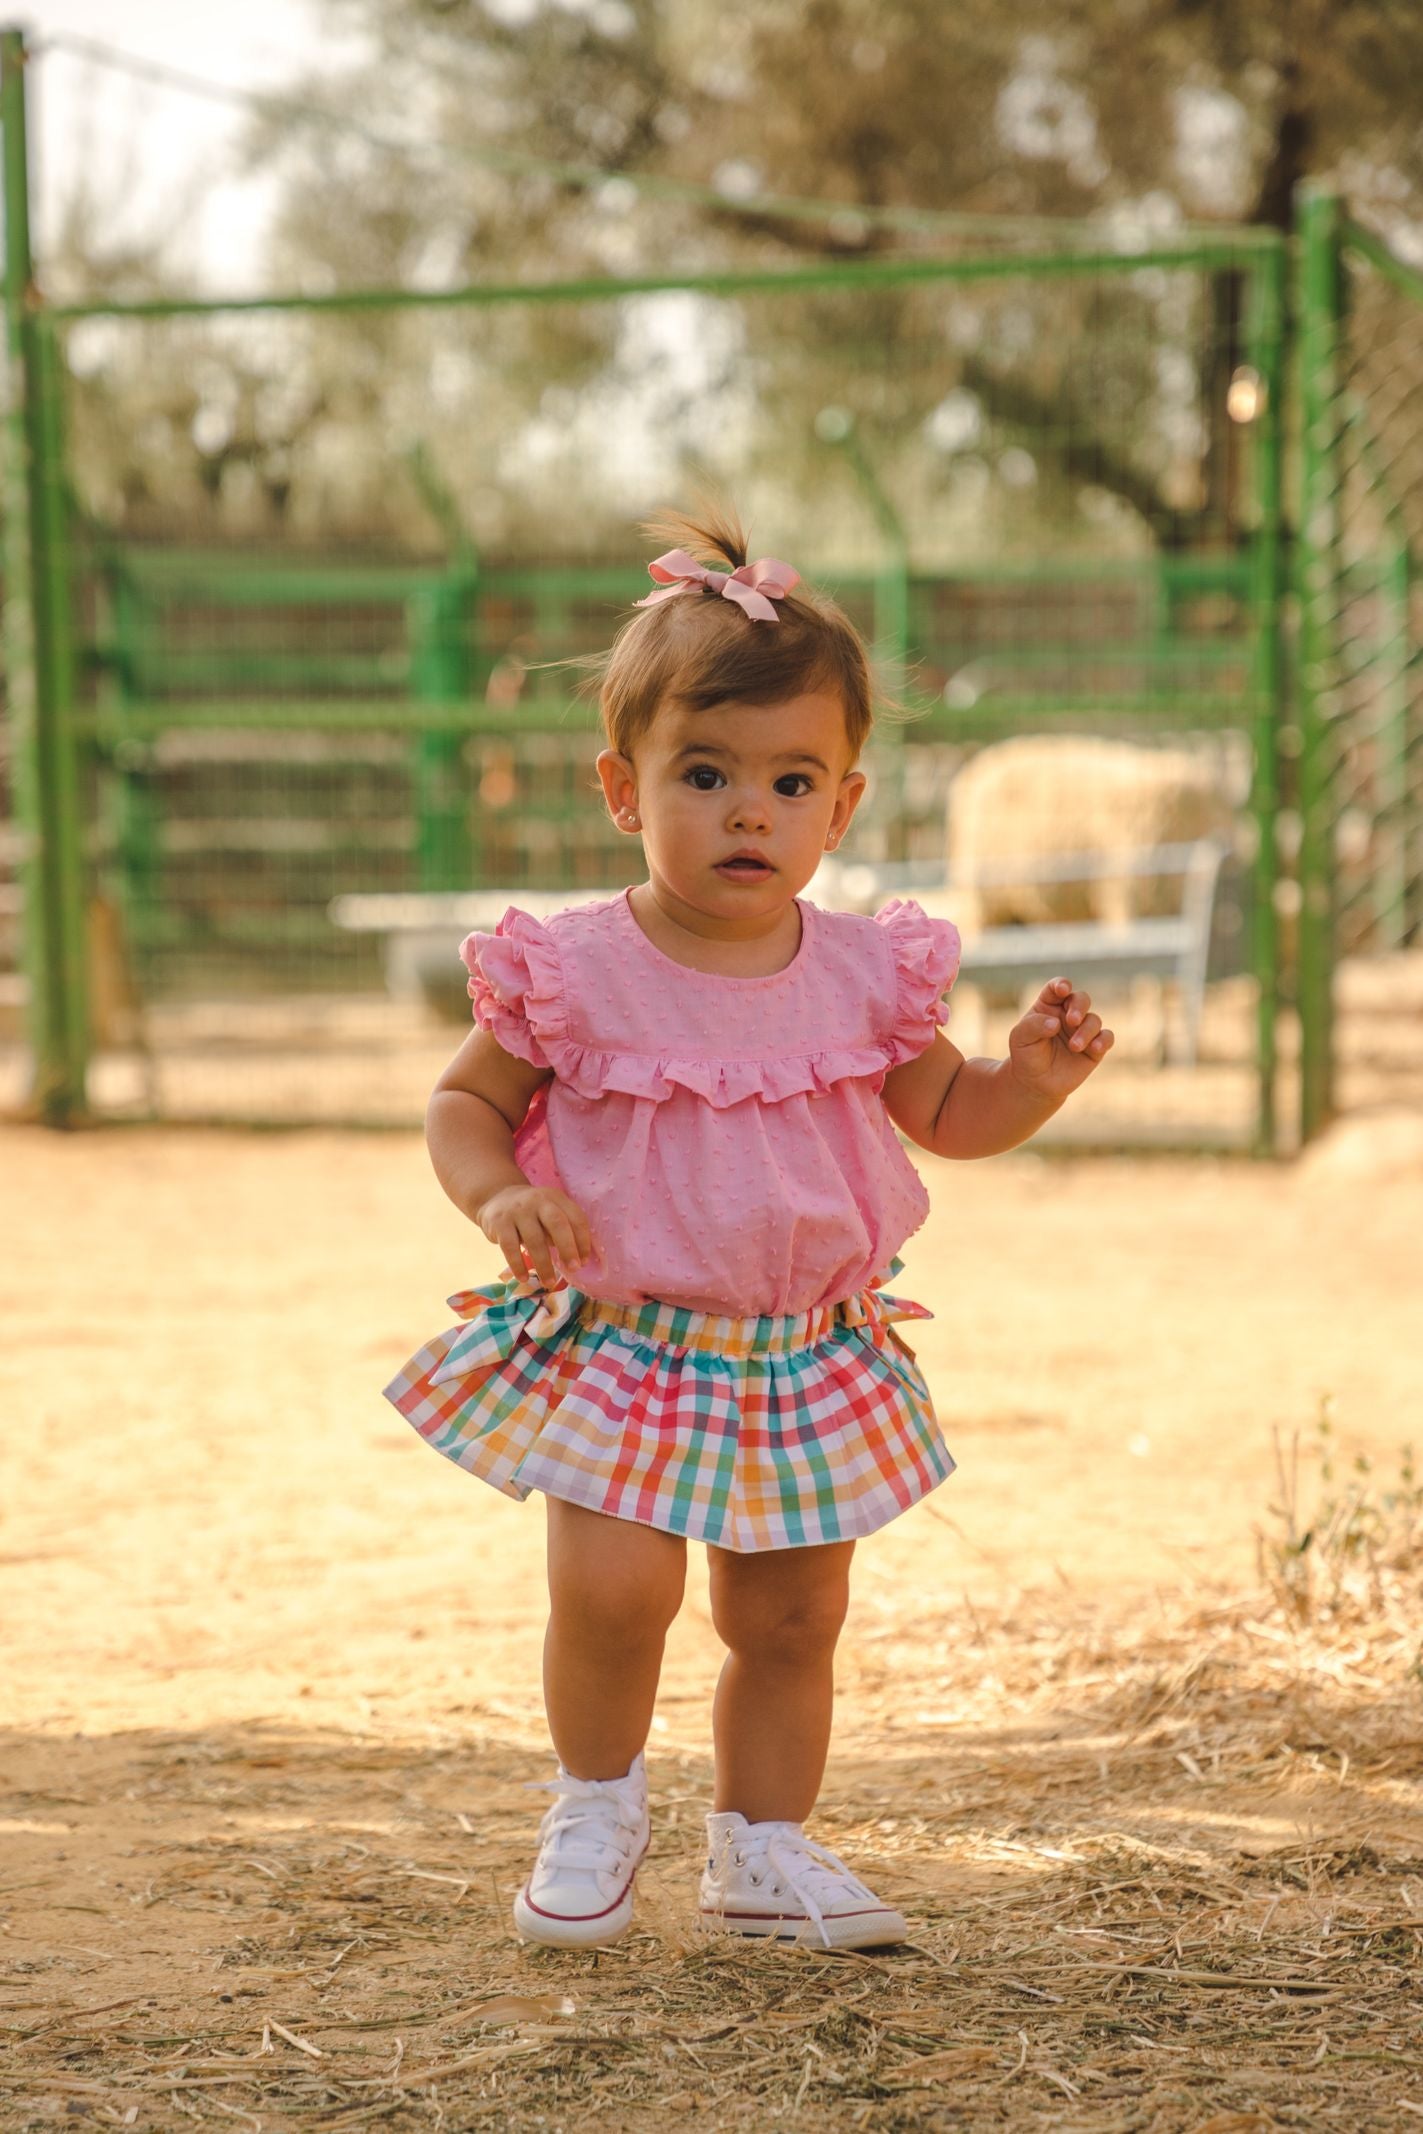 Blusa de bebé rosa Cocote & Charanga VERANO/Outlet